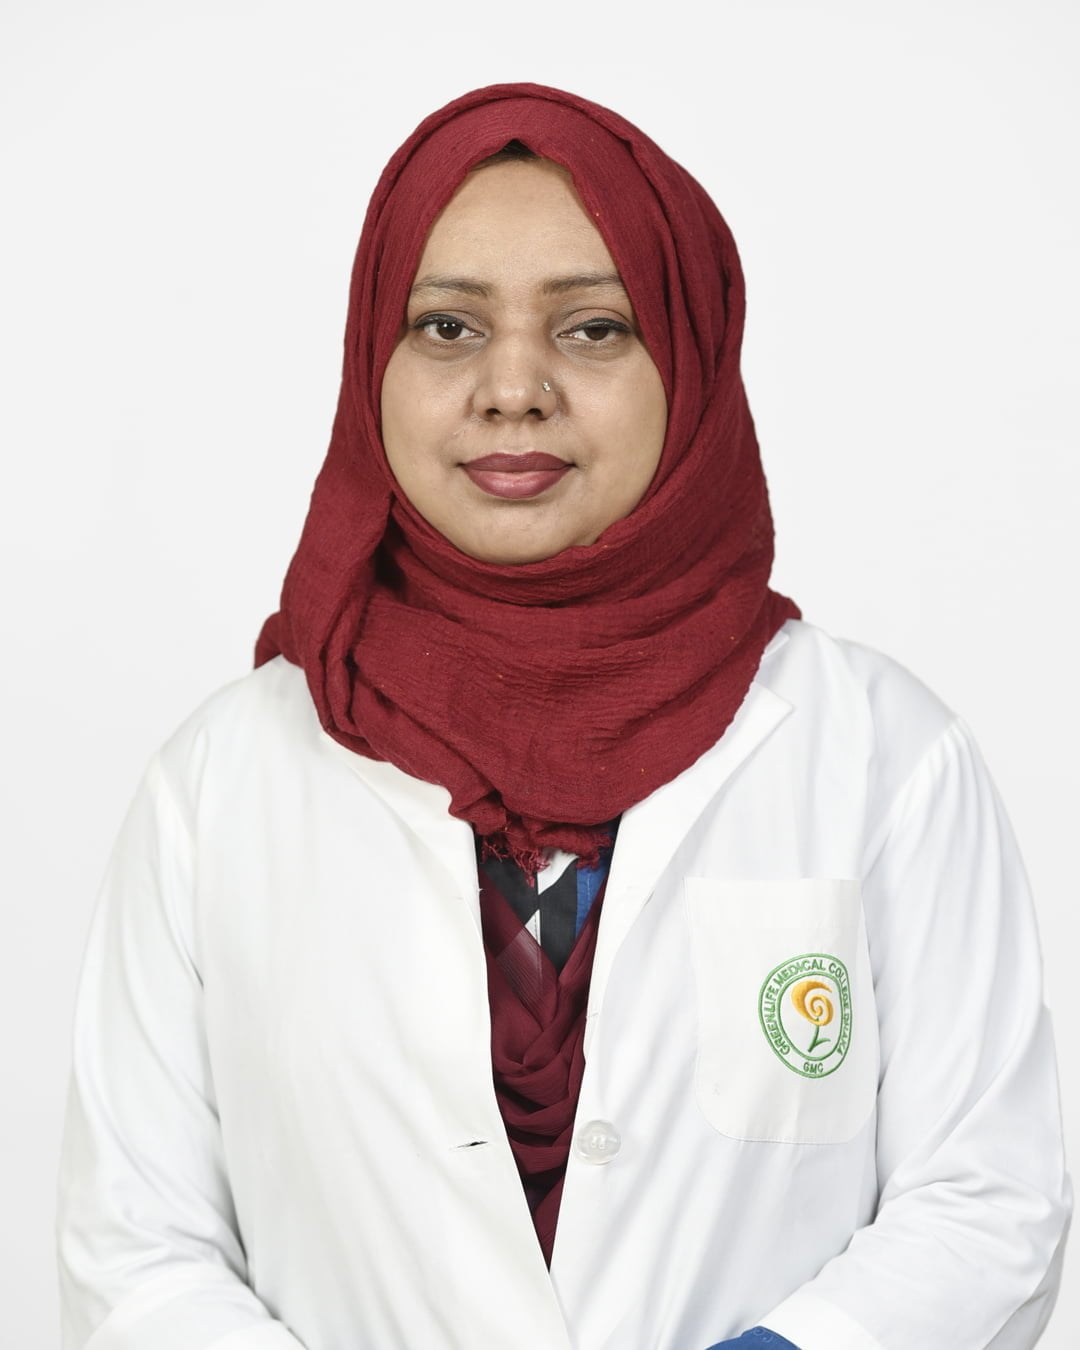 Dr. Fahmida Kabir